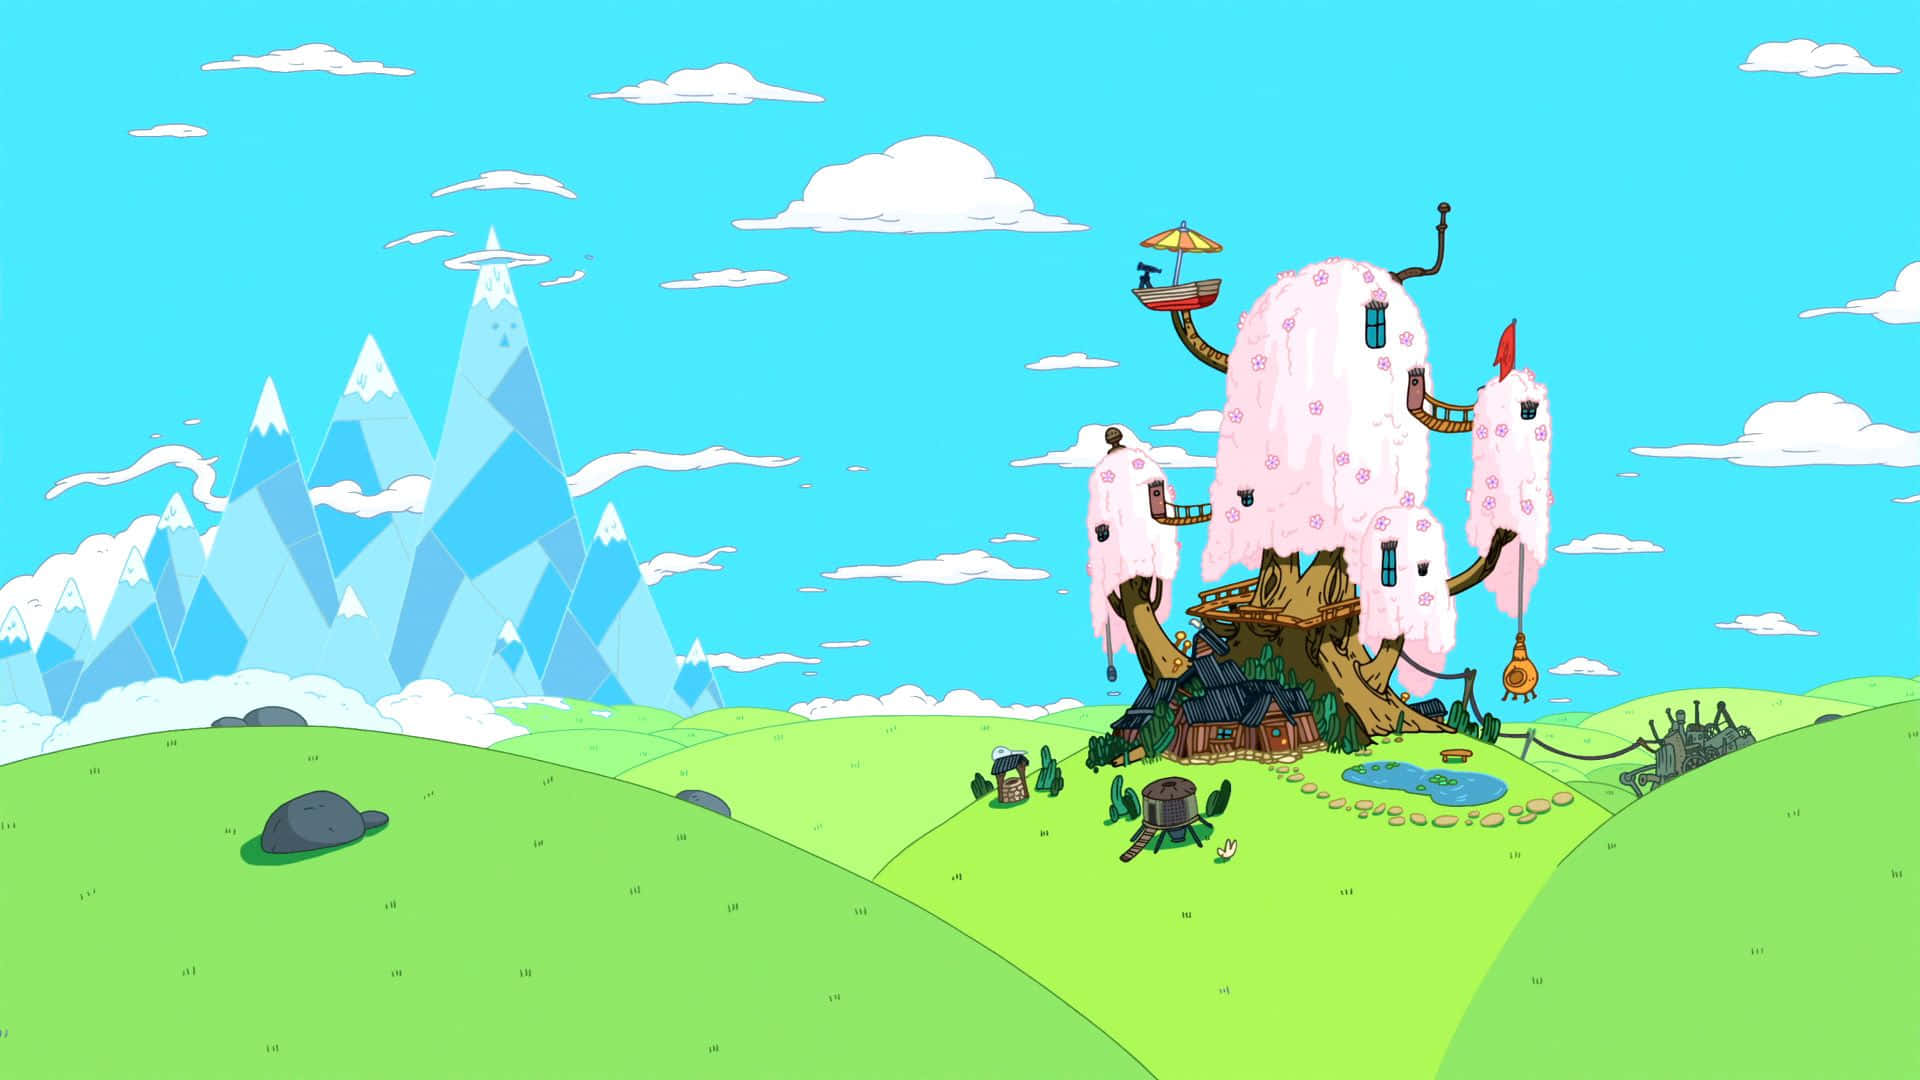 Einesurreale Landschaft Voller Abenteuer In Der Welt Von Adventure Time Wallpaper